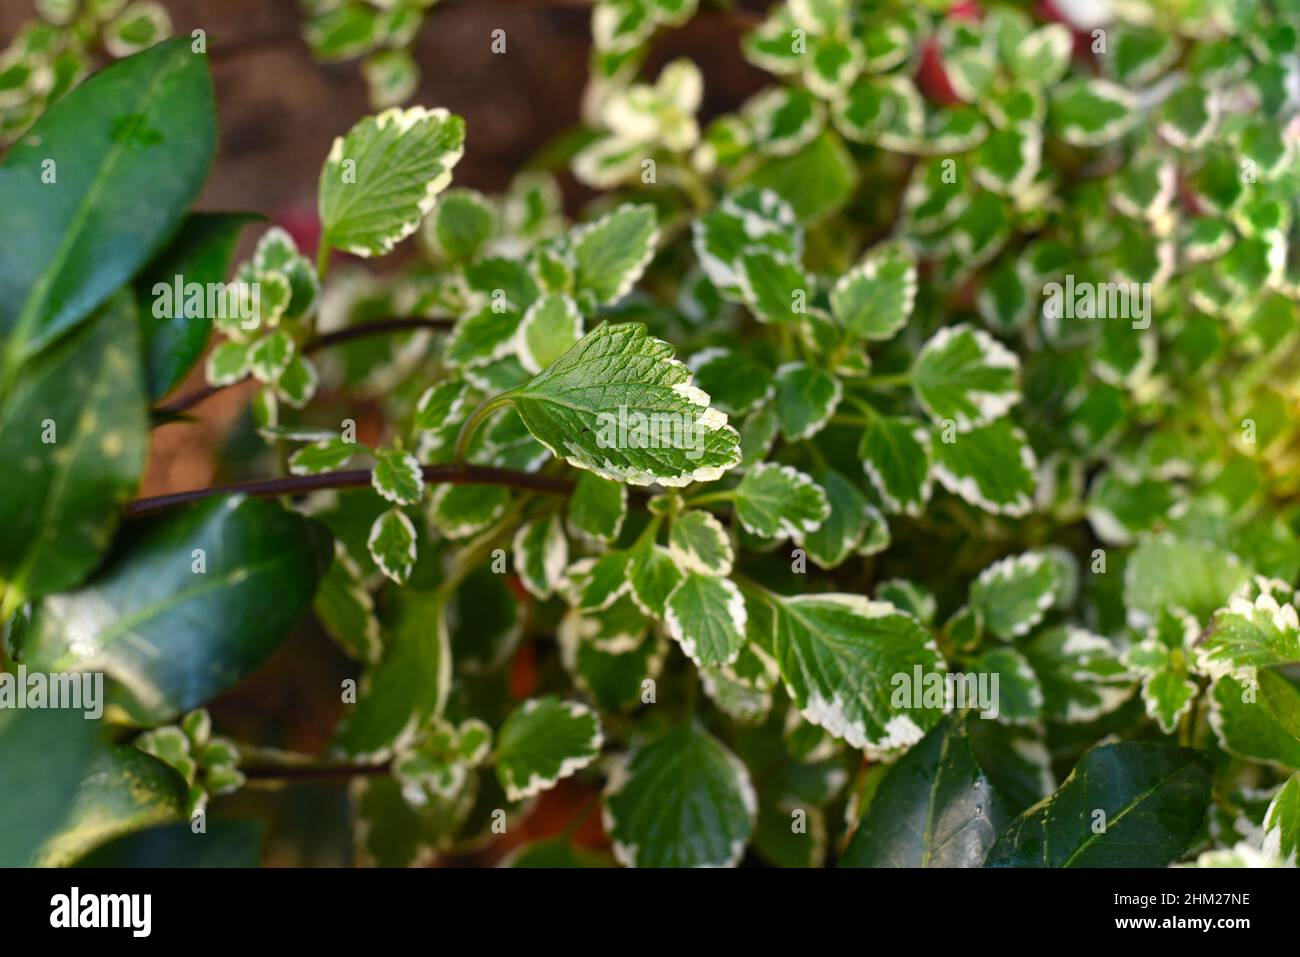 Plectranthus coleoides Marginatus or White Edged Swedish Ivy leaf close up Stock Photo